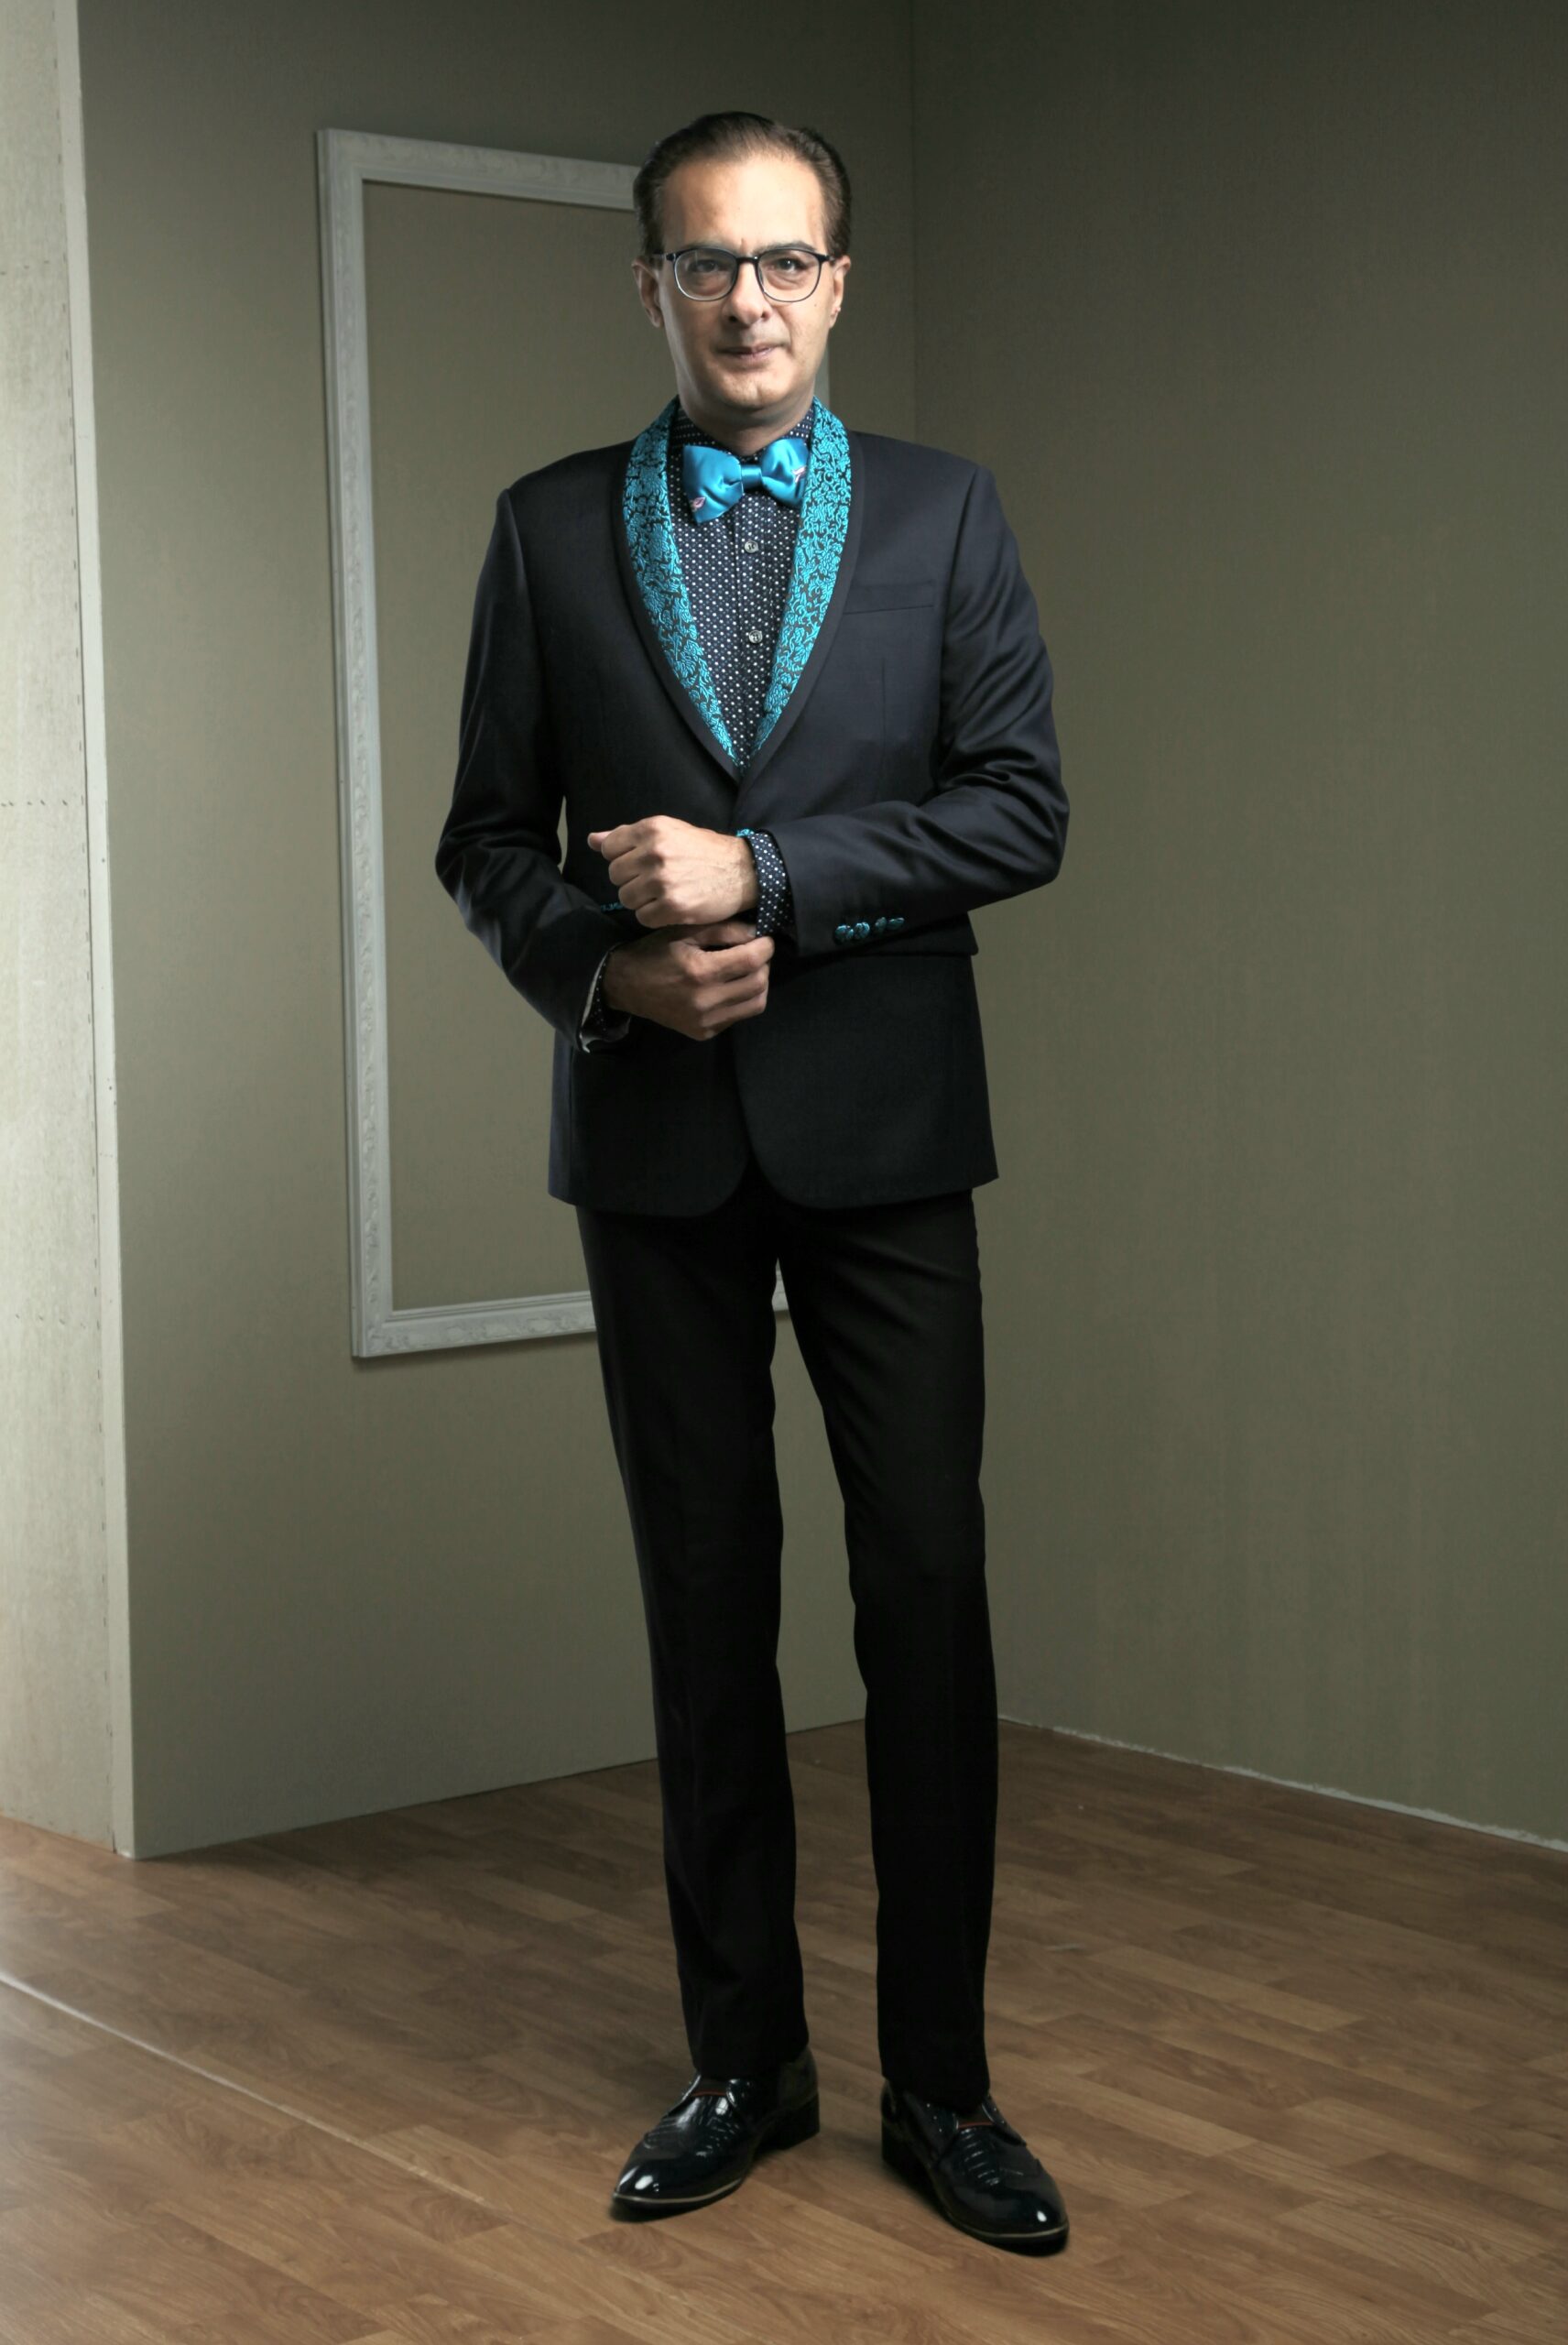 MST-5002-03-rent_rental_hire_tuxedo_suit_black_tie_suit_designer_suits_shop_tailor